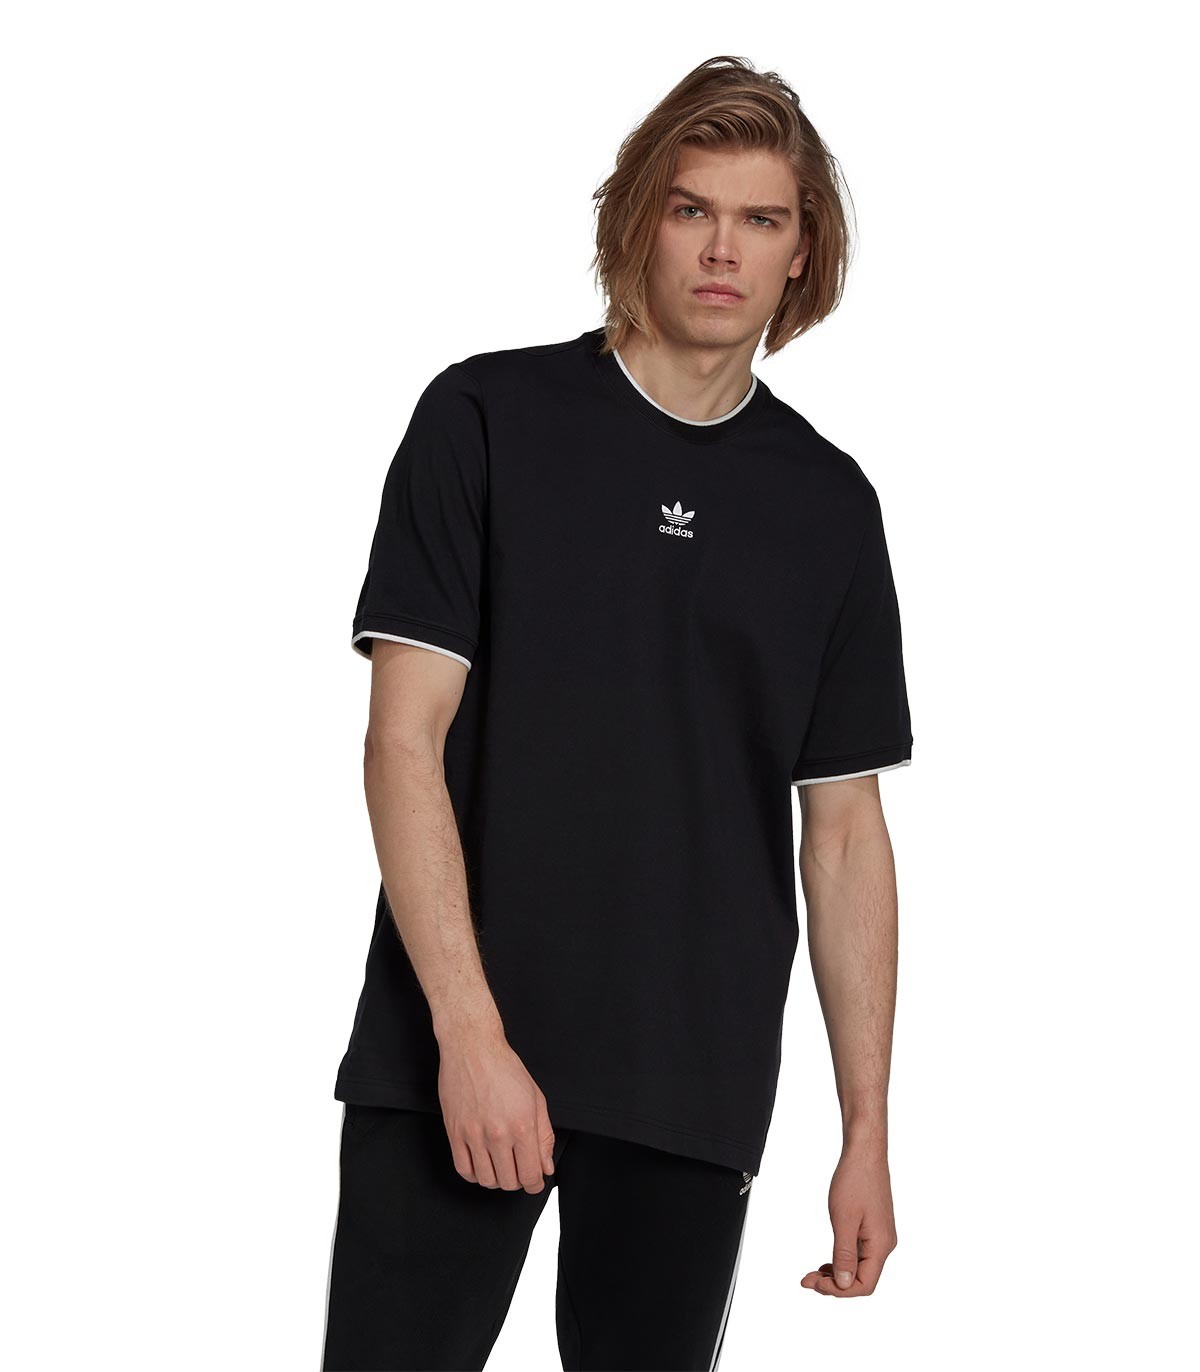 adidas - Camiseta Manga Corta Rekive - Negro